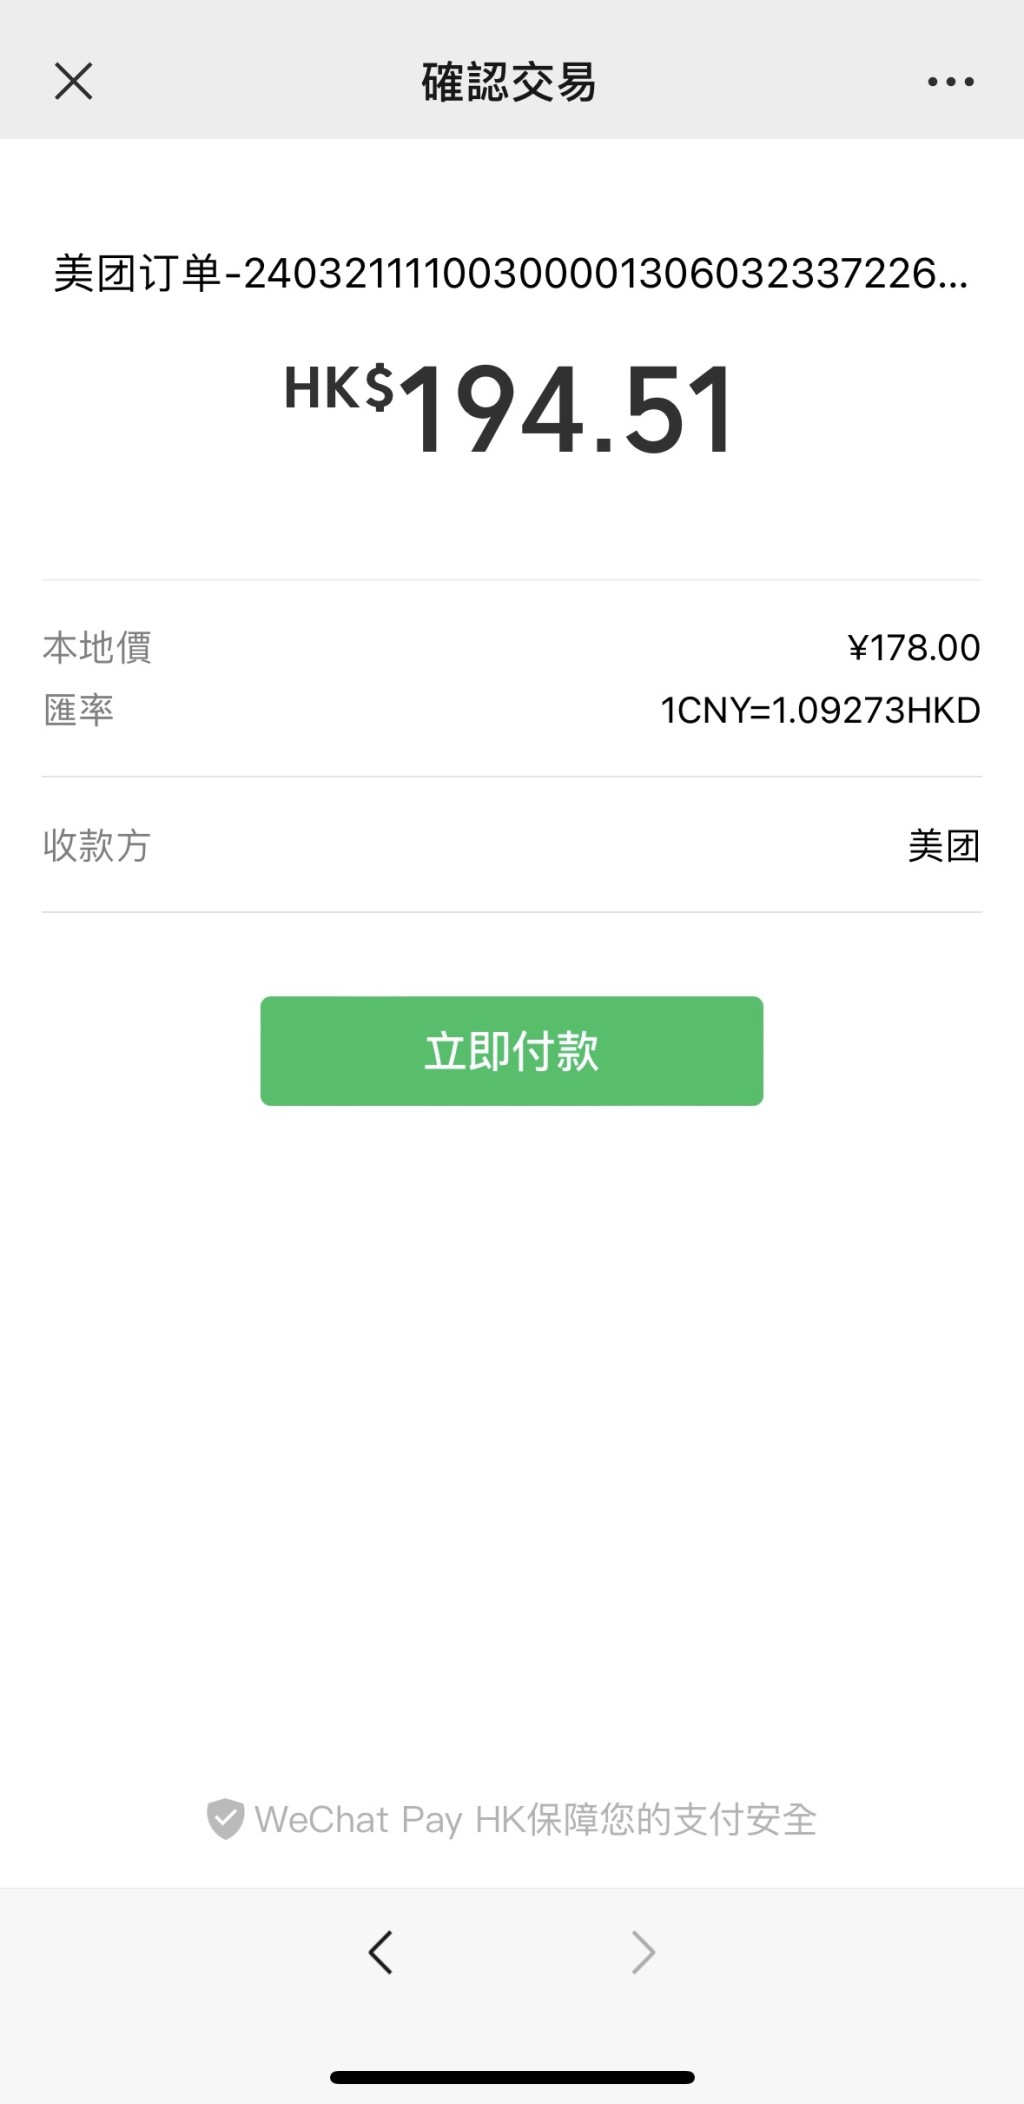 12.跳轉至WeChat Pay HK港幣付款，無任何手續費